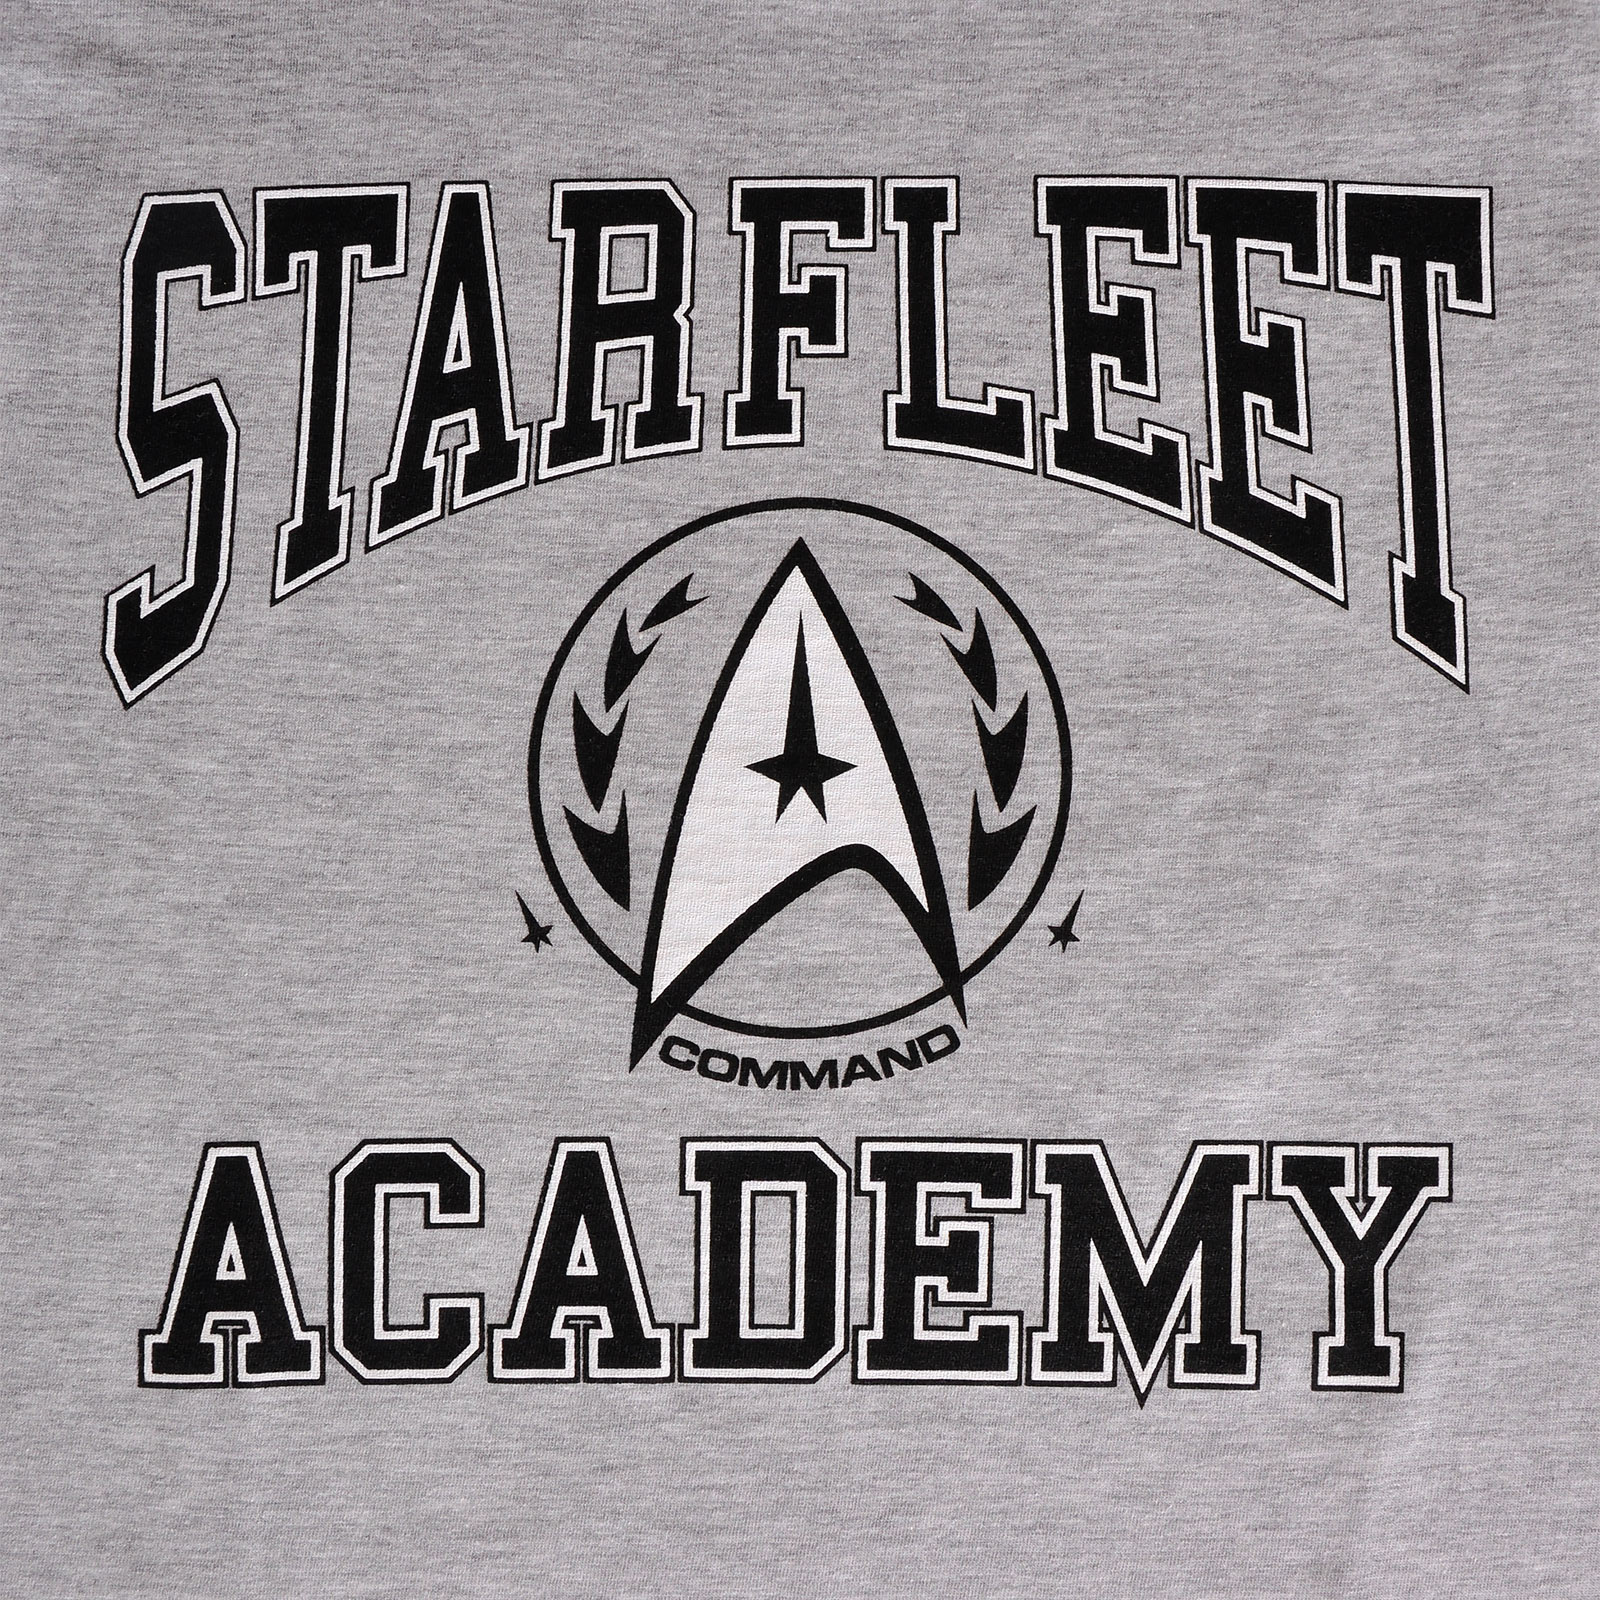 Star Trek - Starfleet Academy T-Shirt grau